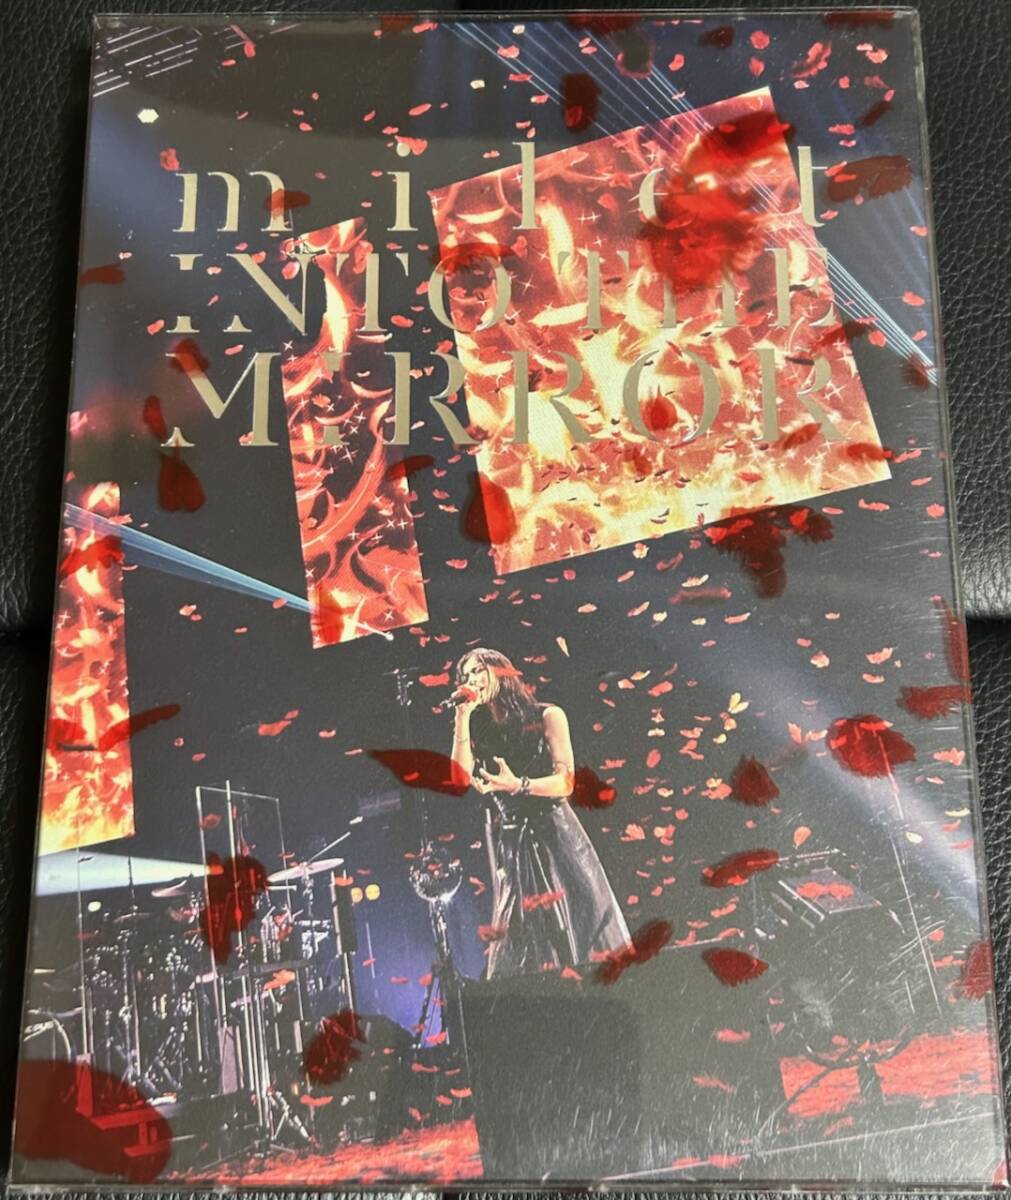 ■送料無料■milet 3rd anniversary live "INTO THE MIRROR" 初回生産限定盤 Blu-ray+ライブCD